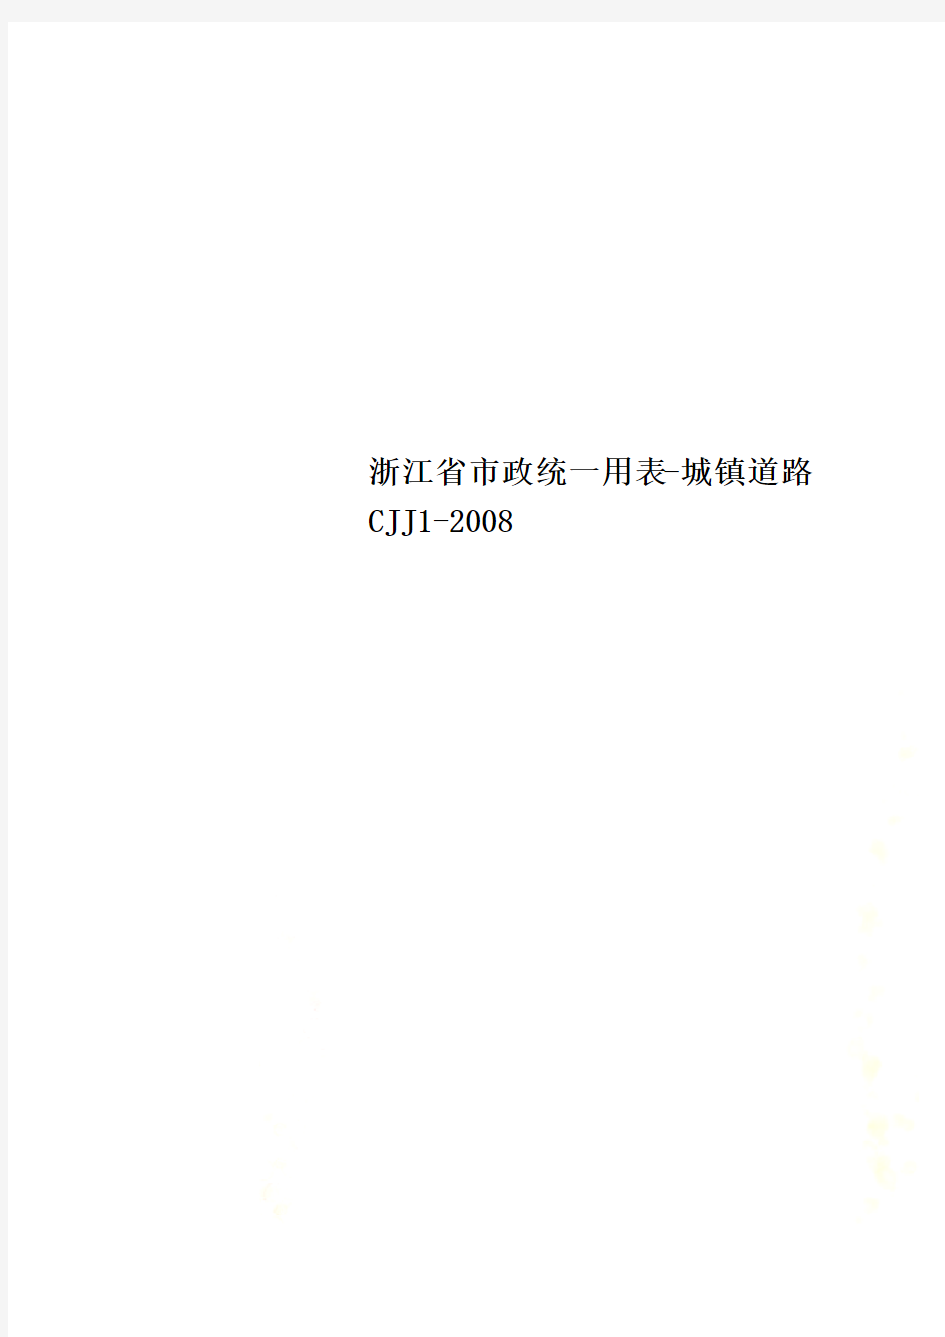 浙江省市政统一用表-城镇道路CJJ1-2008